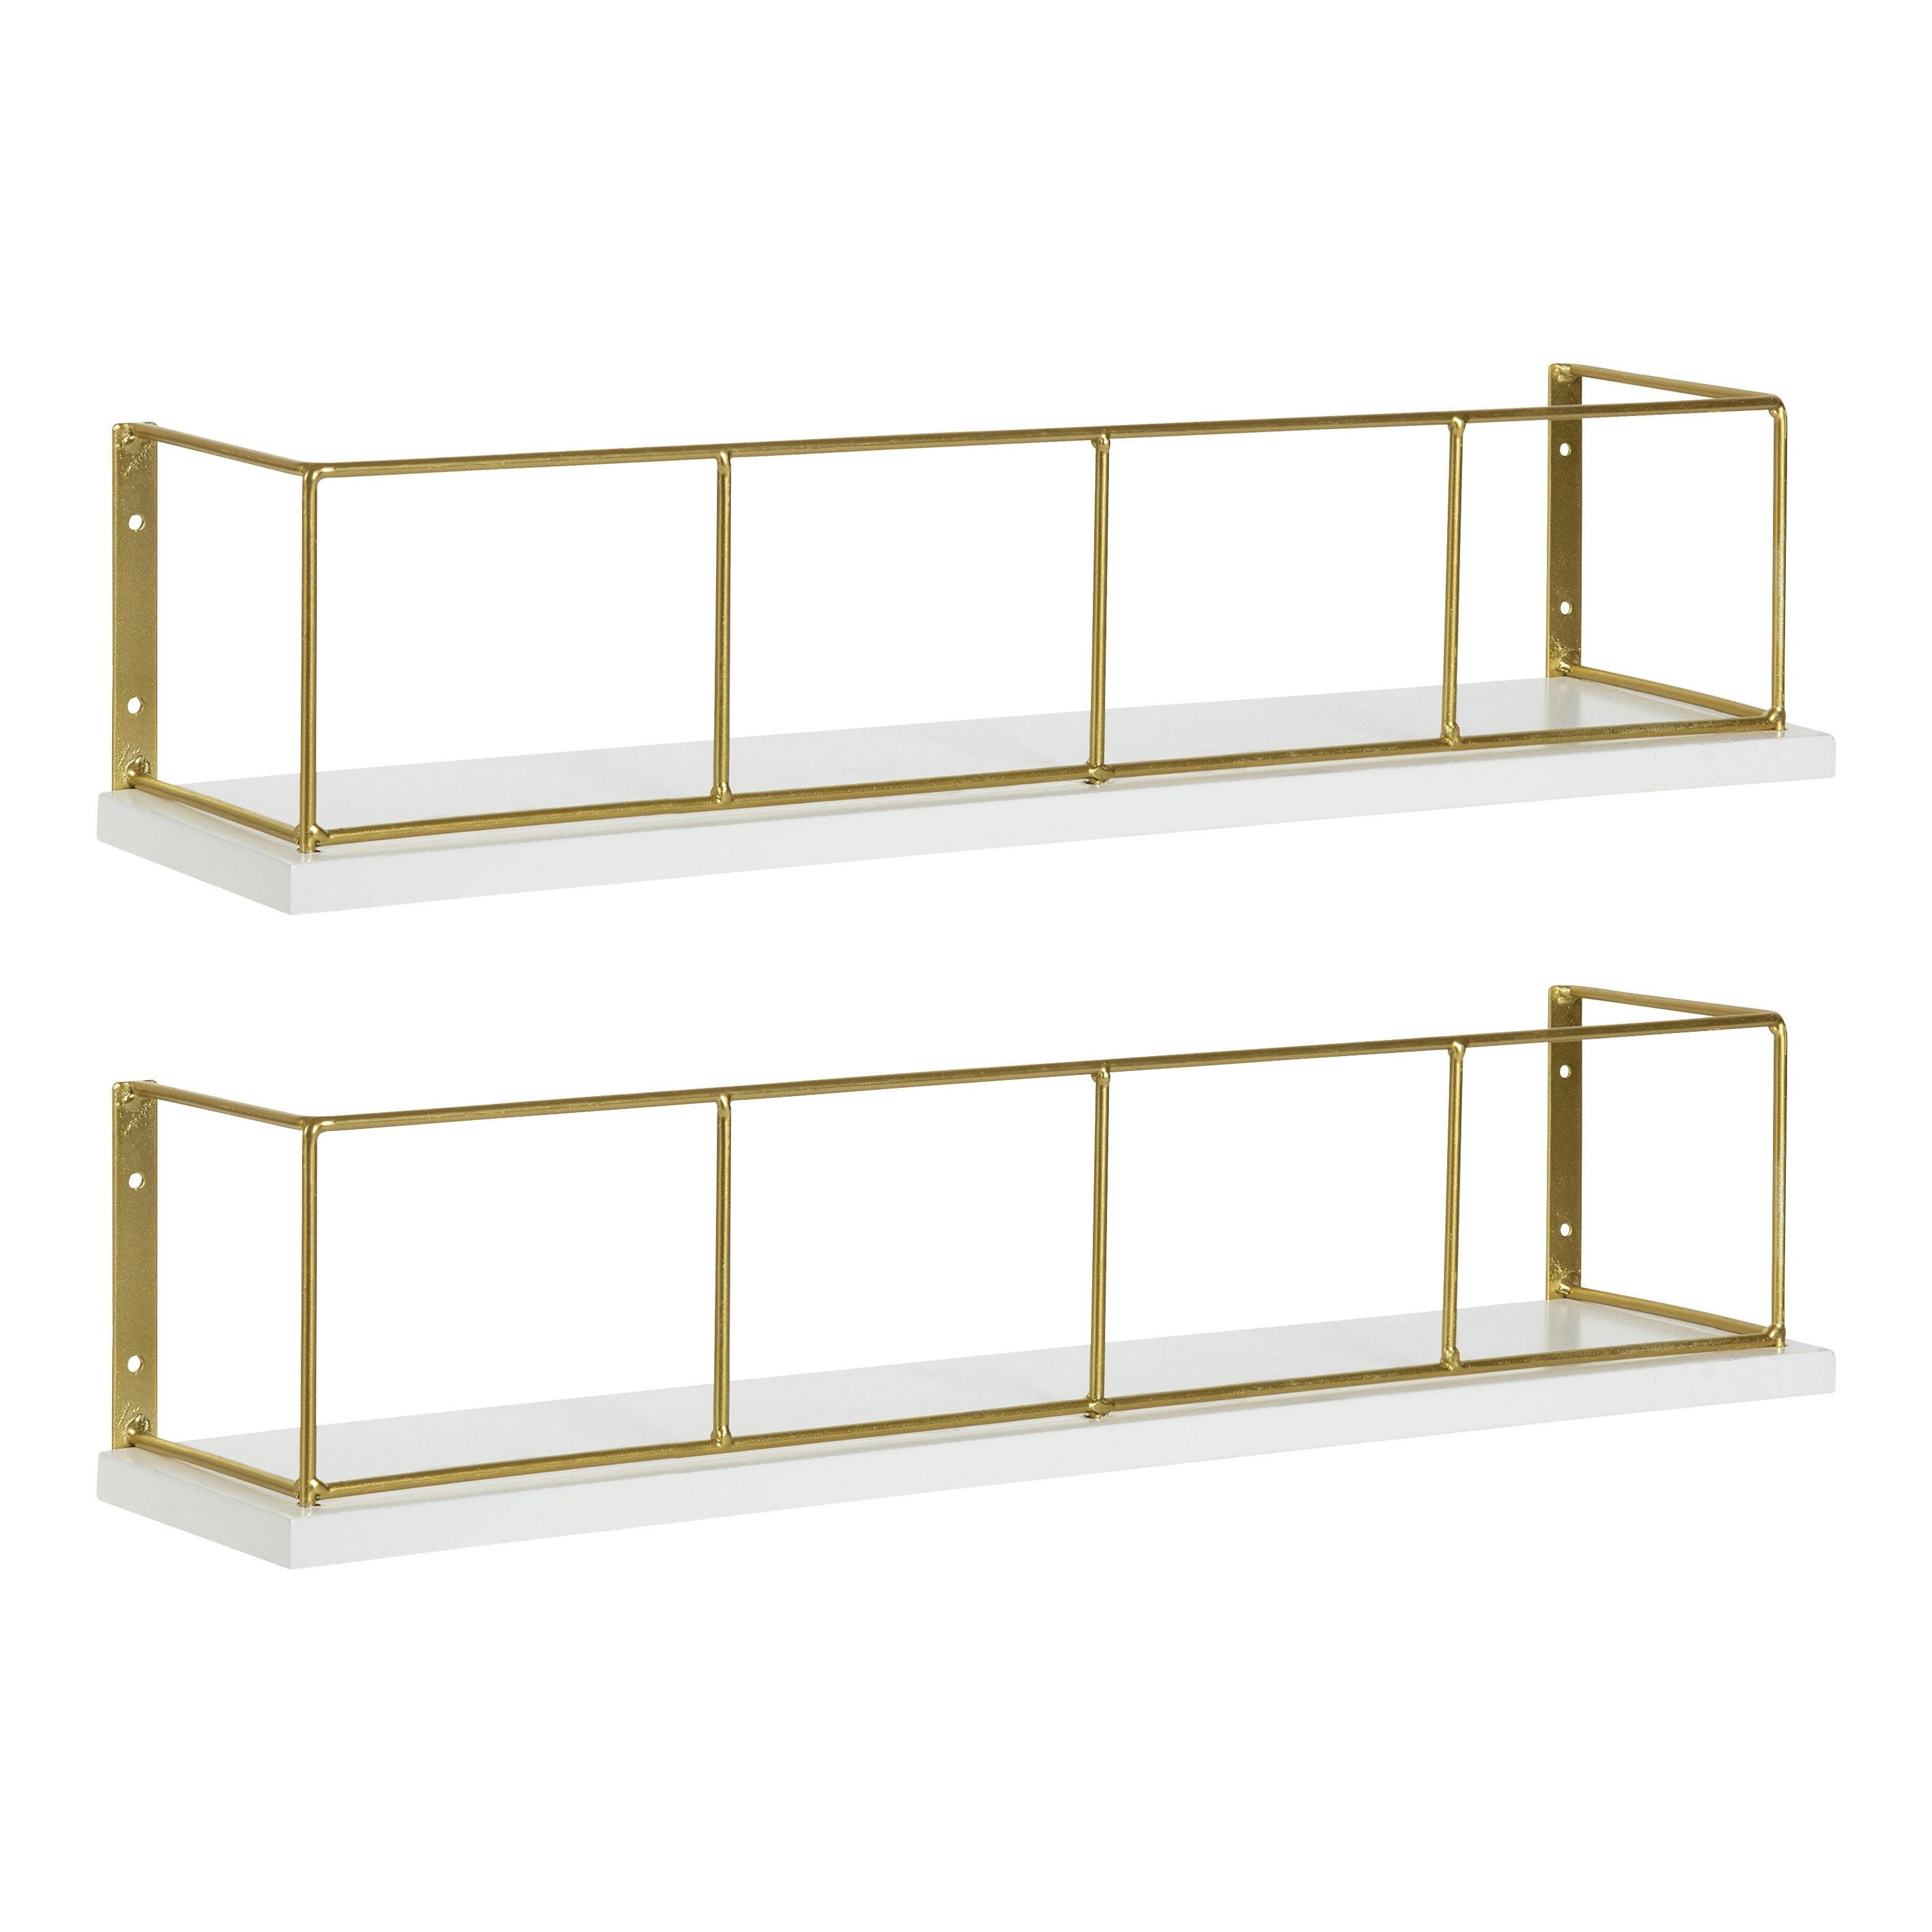 Elegant 18" White and Gold Wood Floating Wall Shelf Set